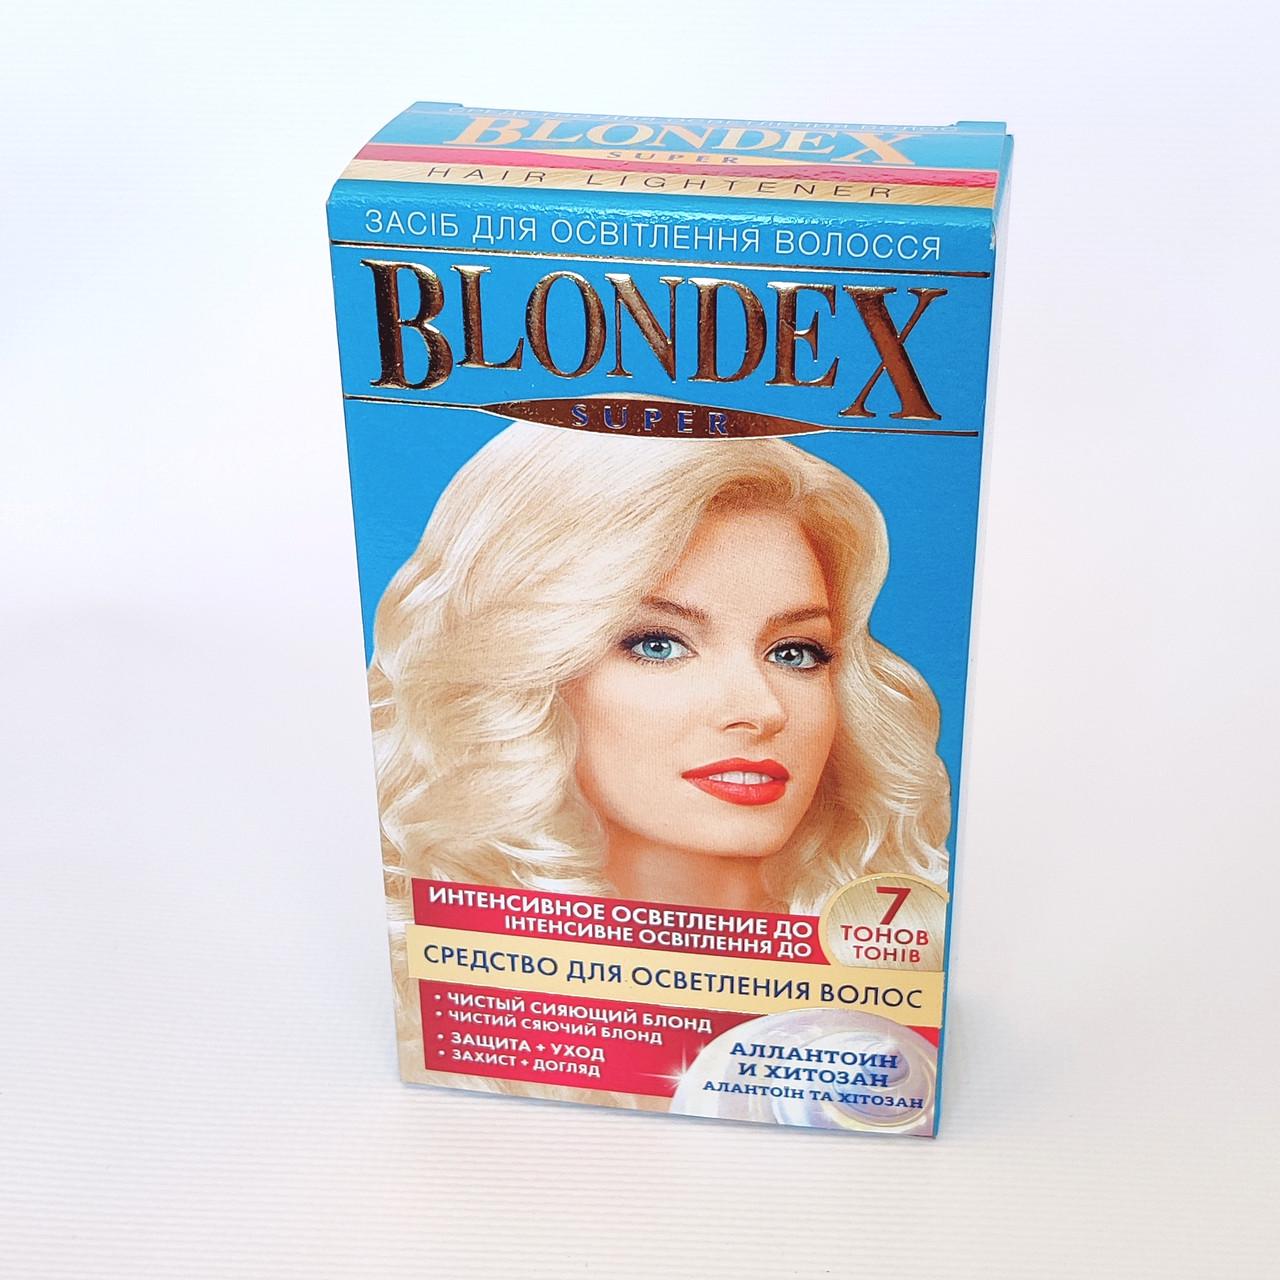 Средство для осветления волос Blondex Super 20 г